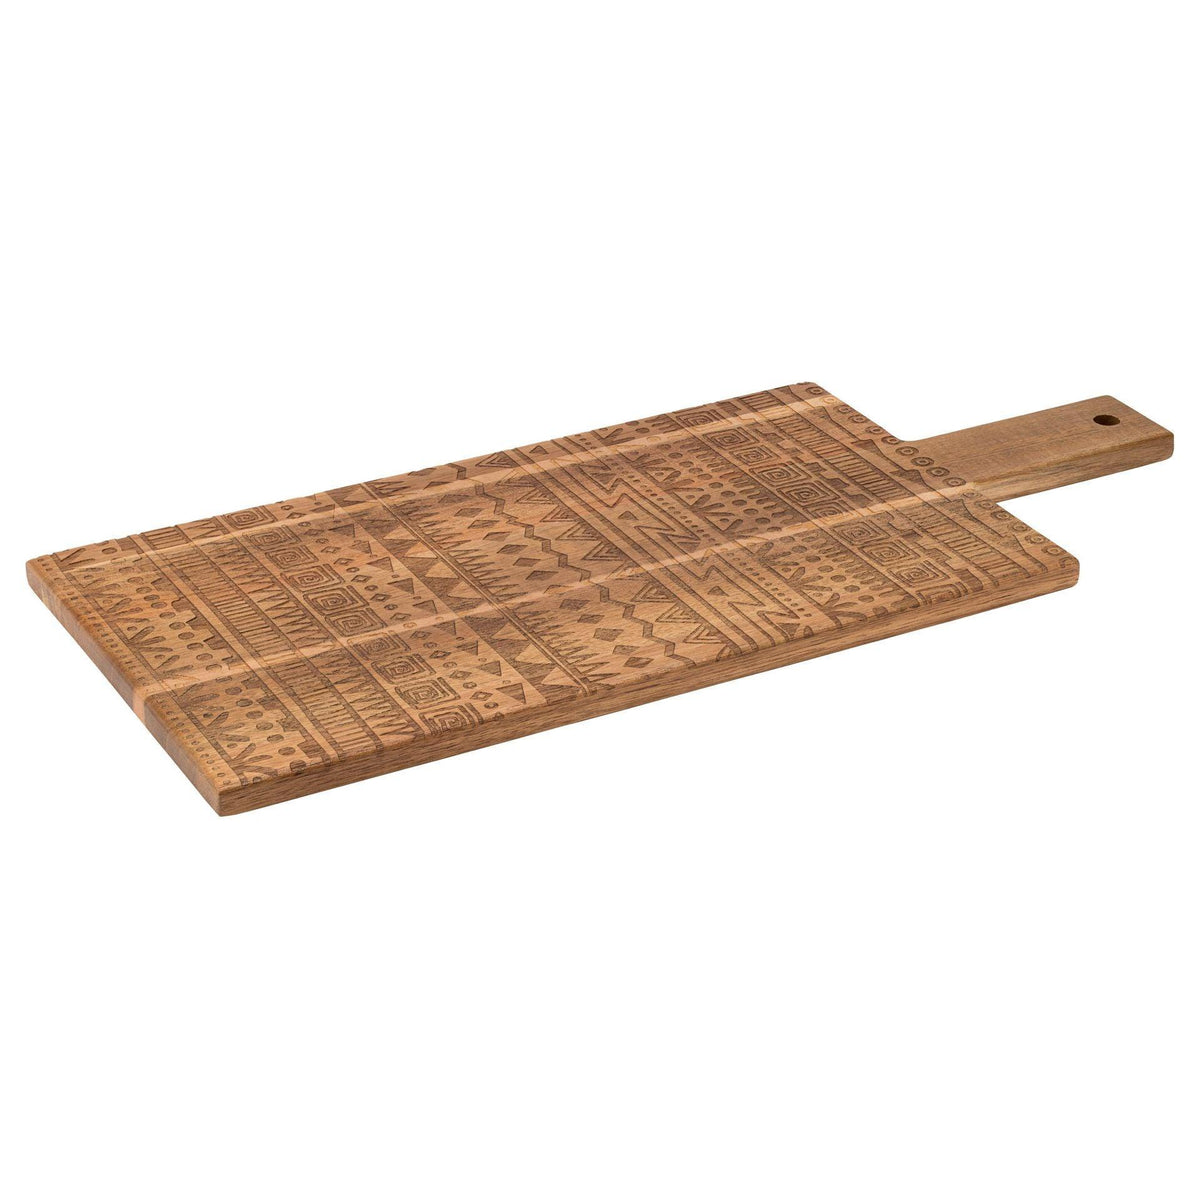 Tribal Handled Acacia Wood Boards - BESPOKE77